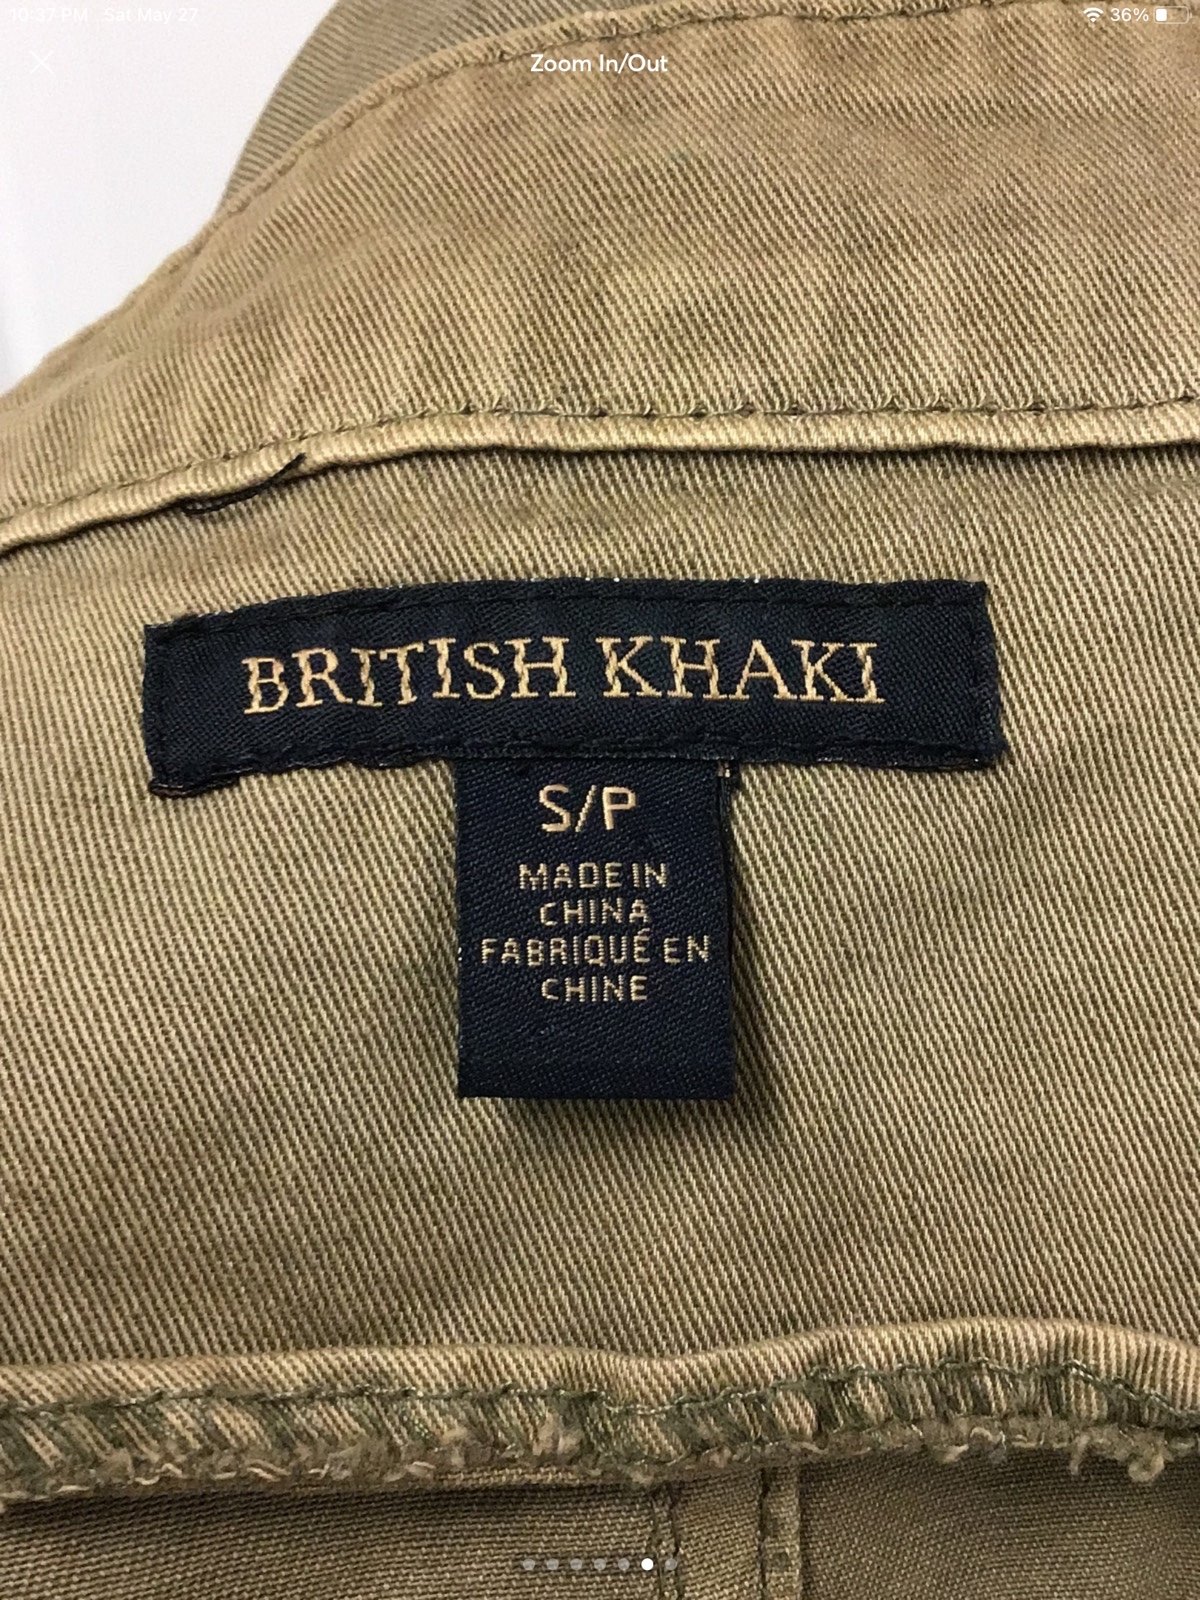 where to buy  British Khaki Vintage Women’s Utility Jacket, Khaki, size S lzOzEOzU9 Fashion